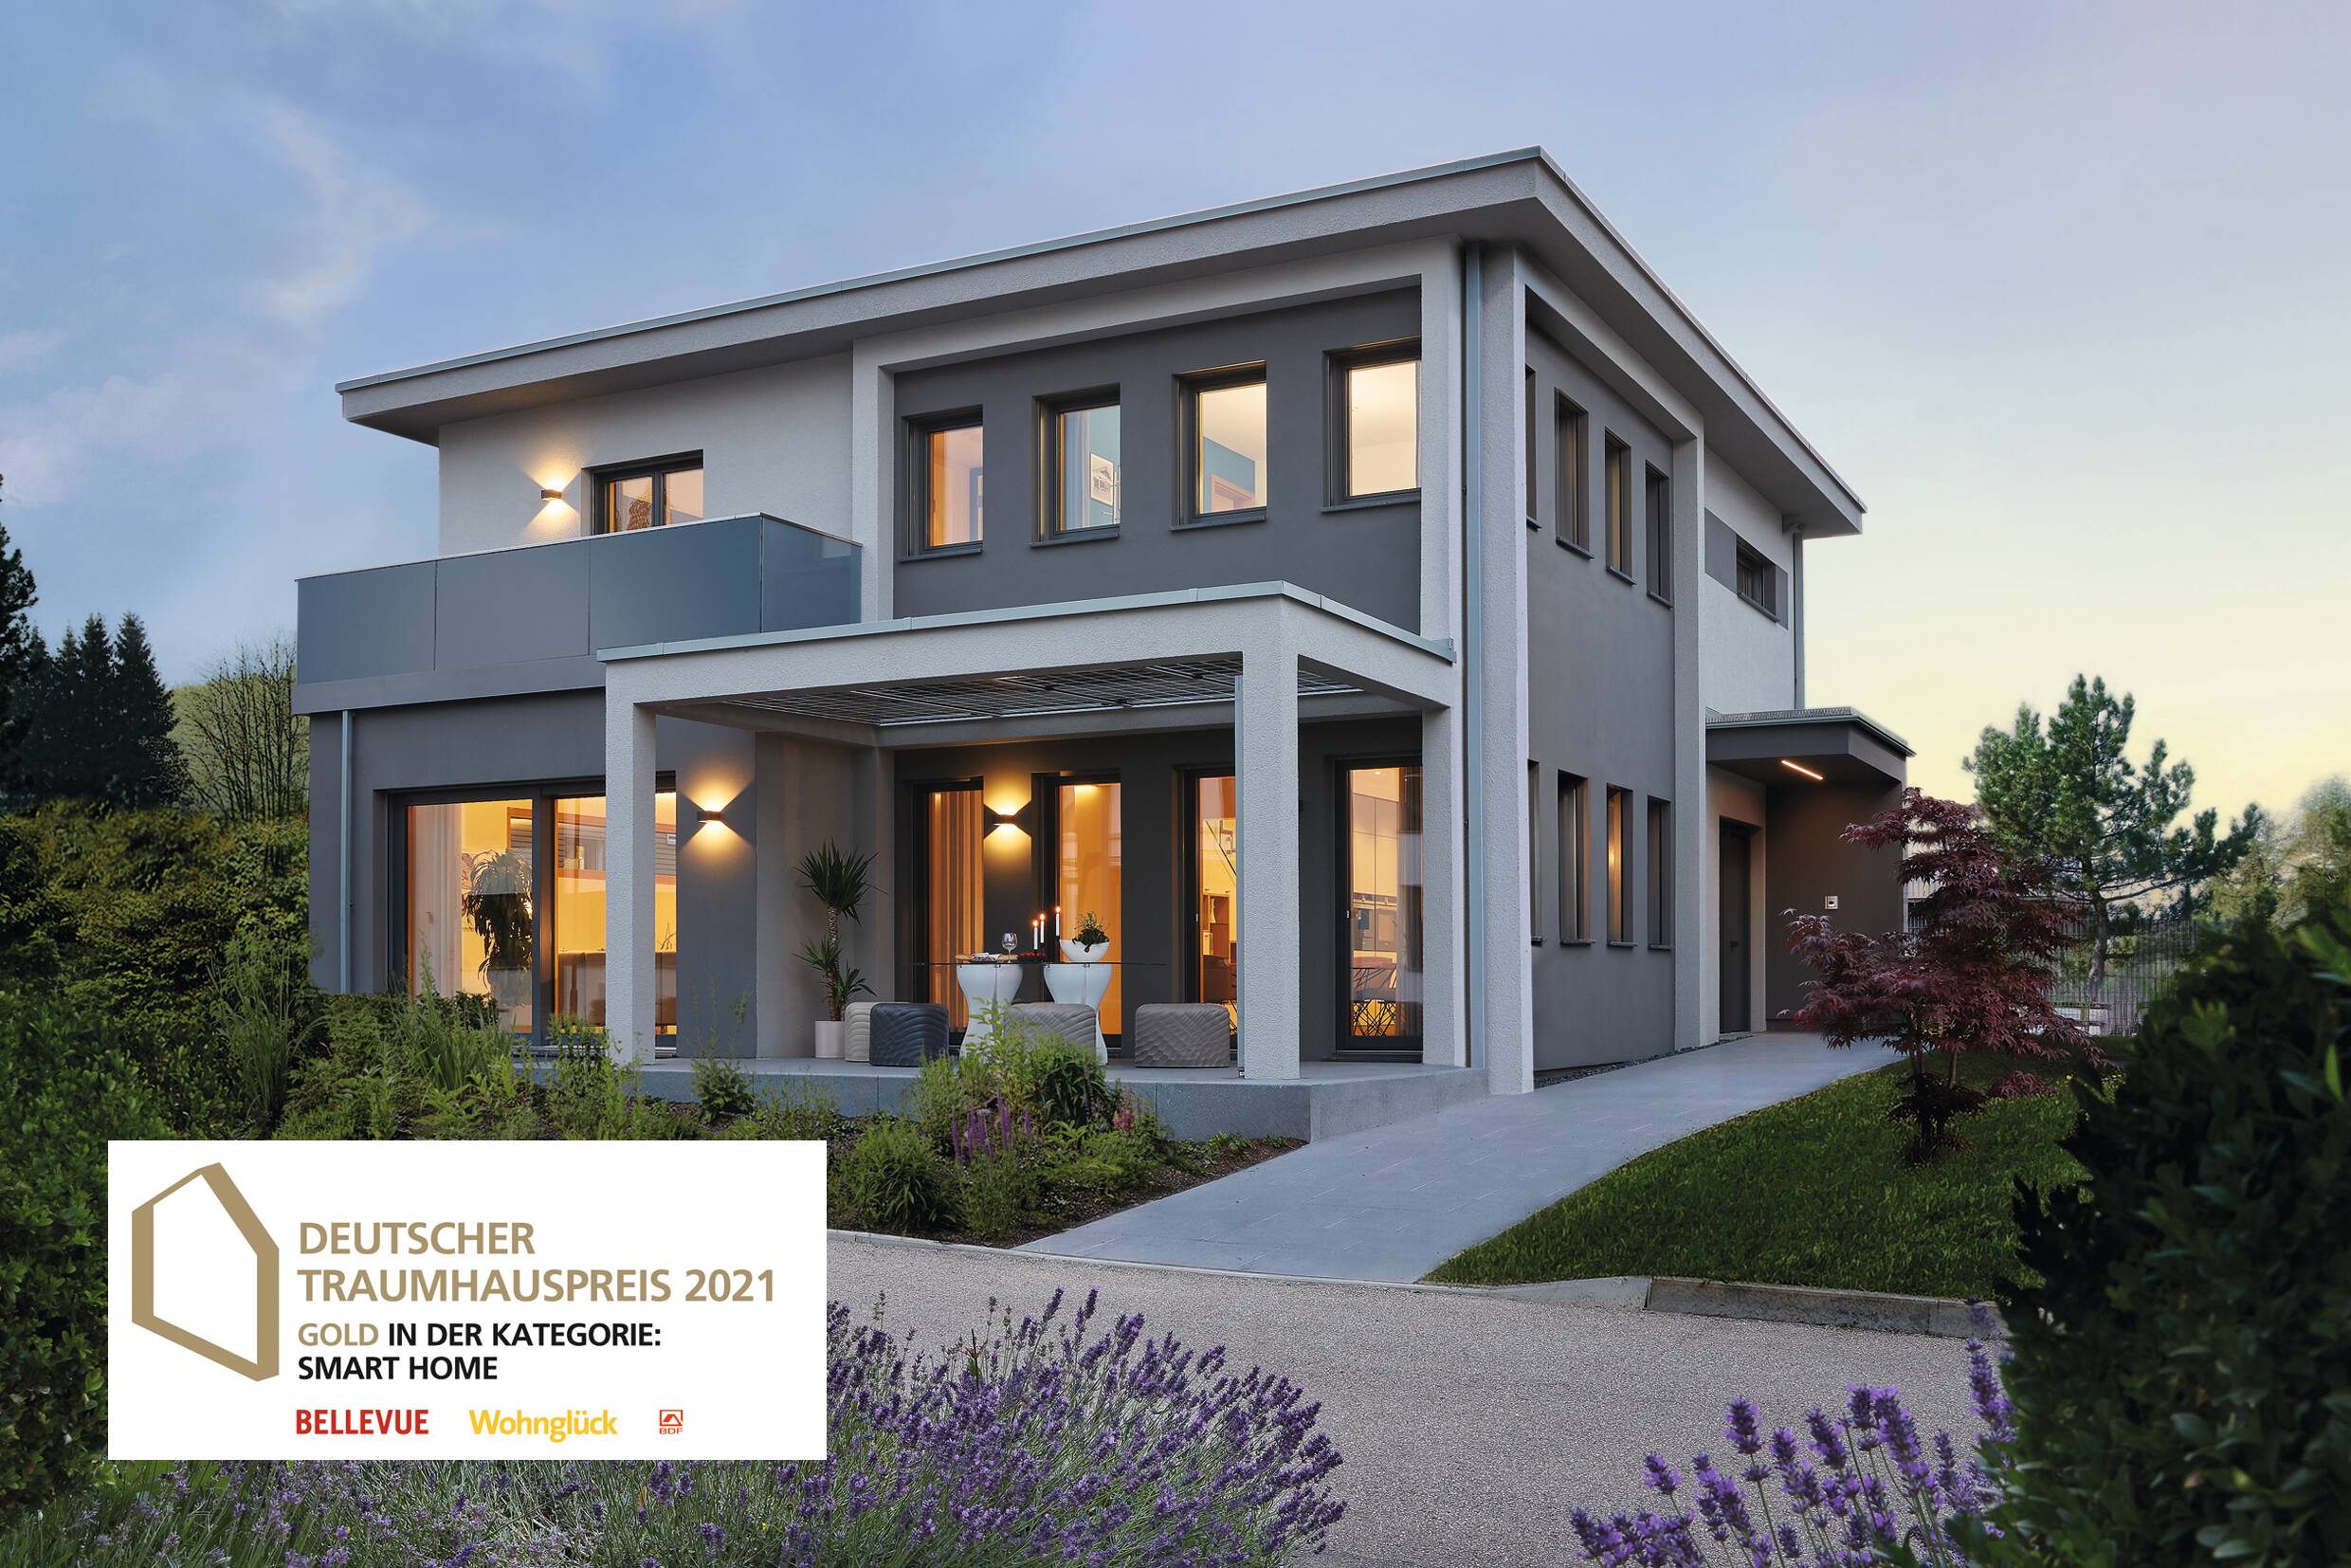 Stadtvilla Fellbach - Gold beim Deutschen Traumhauspreis 2021